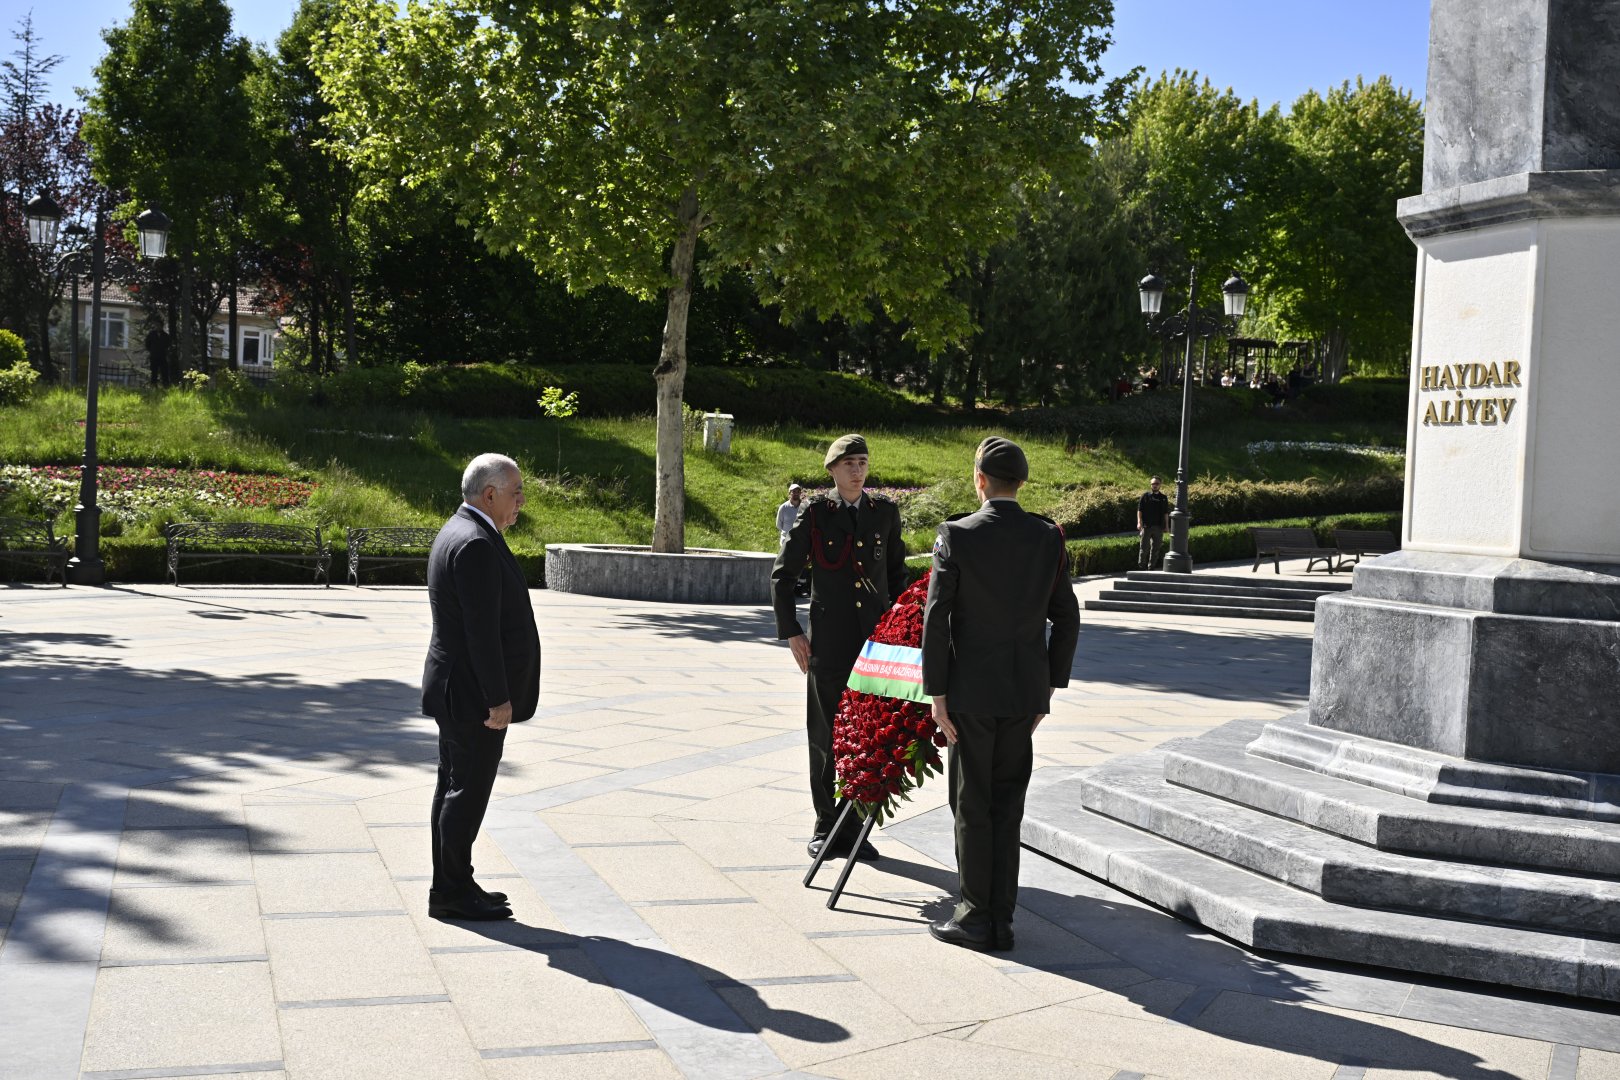 Али Асадов посетил памятник общенациональному лидеру Гейдару Алиеву в Анкаре (ФОТО)